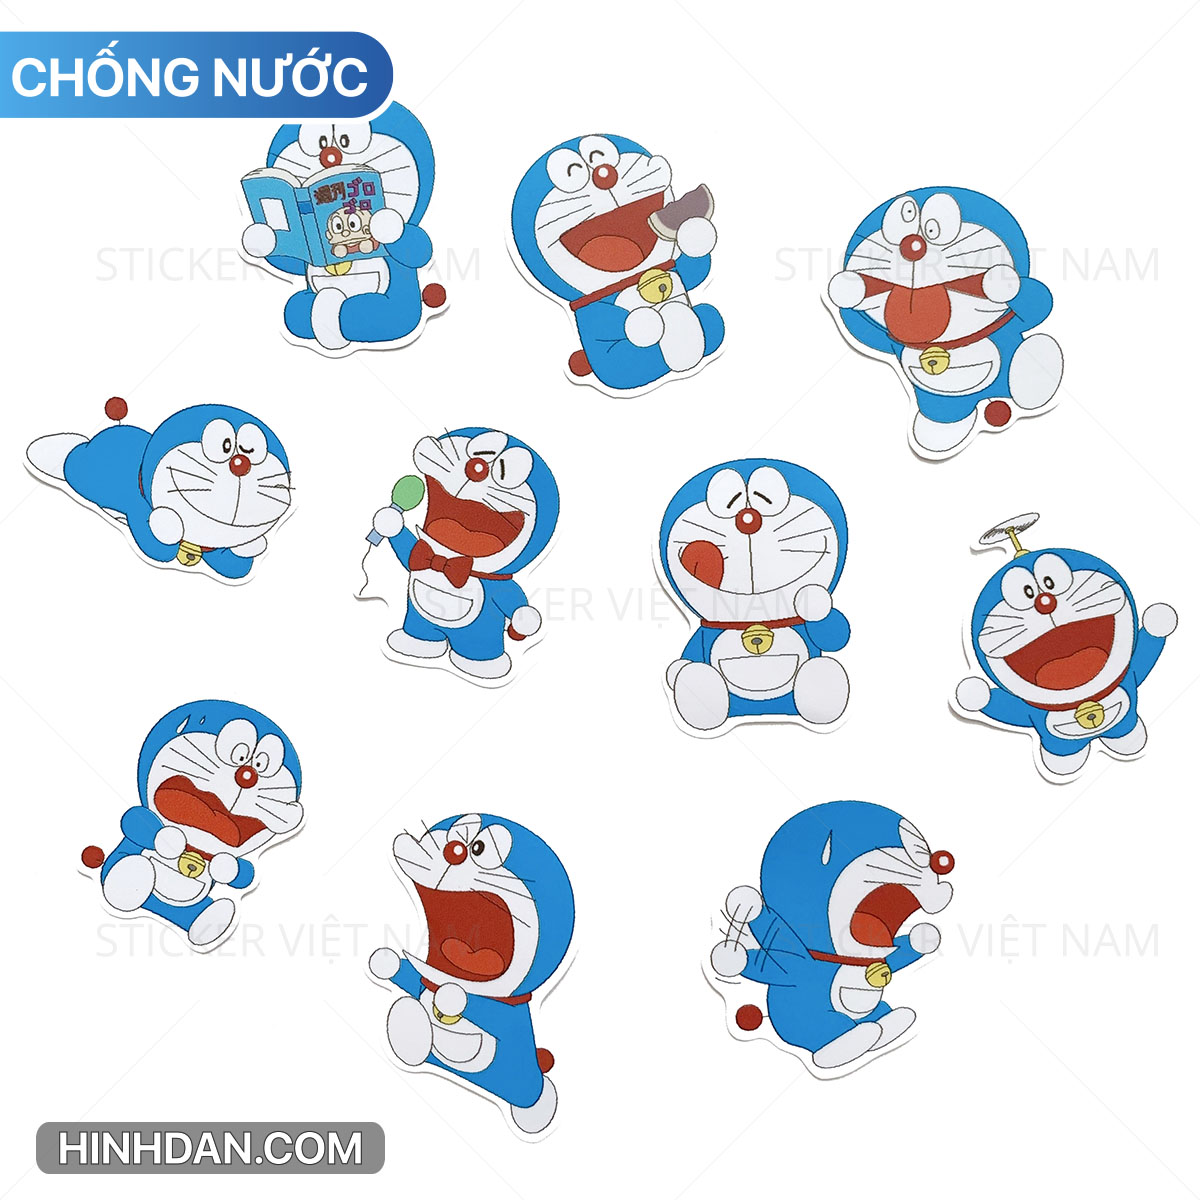 Sticker Doraemon đa dạng là điều bạn không thể bỏ lỡ. Với những hình ảnh tuyệt vời như Doraemon, Nobita, Shizuka, Dorami, chúng tôi mang đến những bộ sticker tuyệt vời nhất cho bạn nhưng vẫn đảm bảo tính độc đáo. Hãy điểm tô cho cuộc sống của bạn với những bộ sticker rực rỡ của chúng tôi.